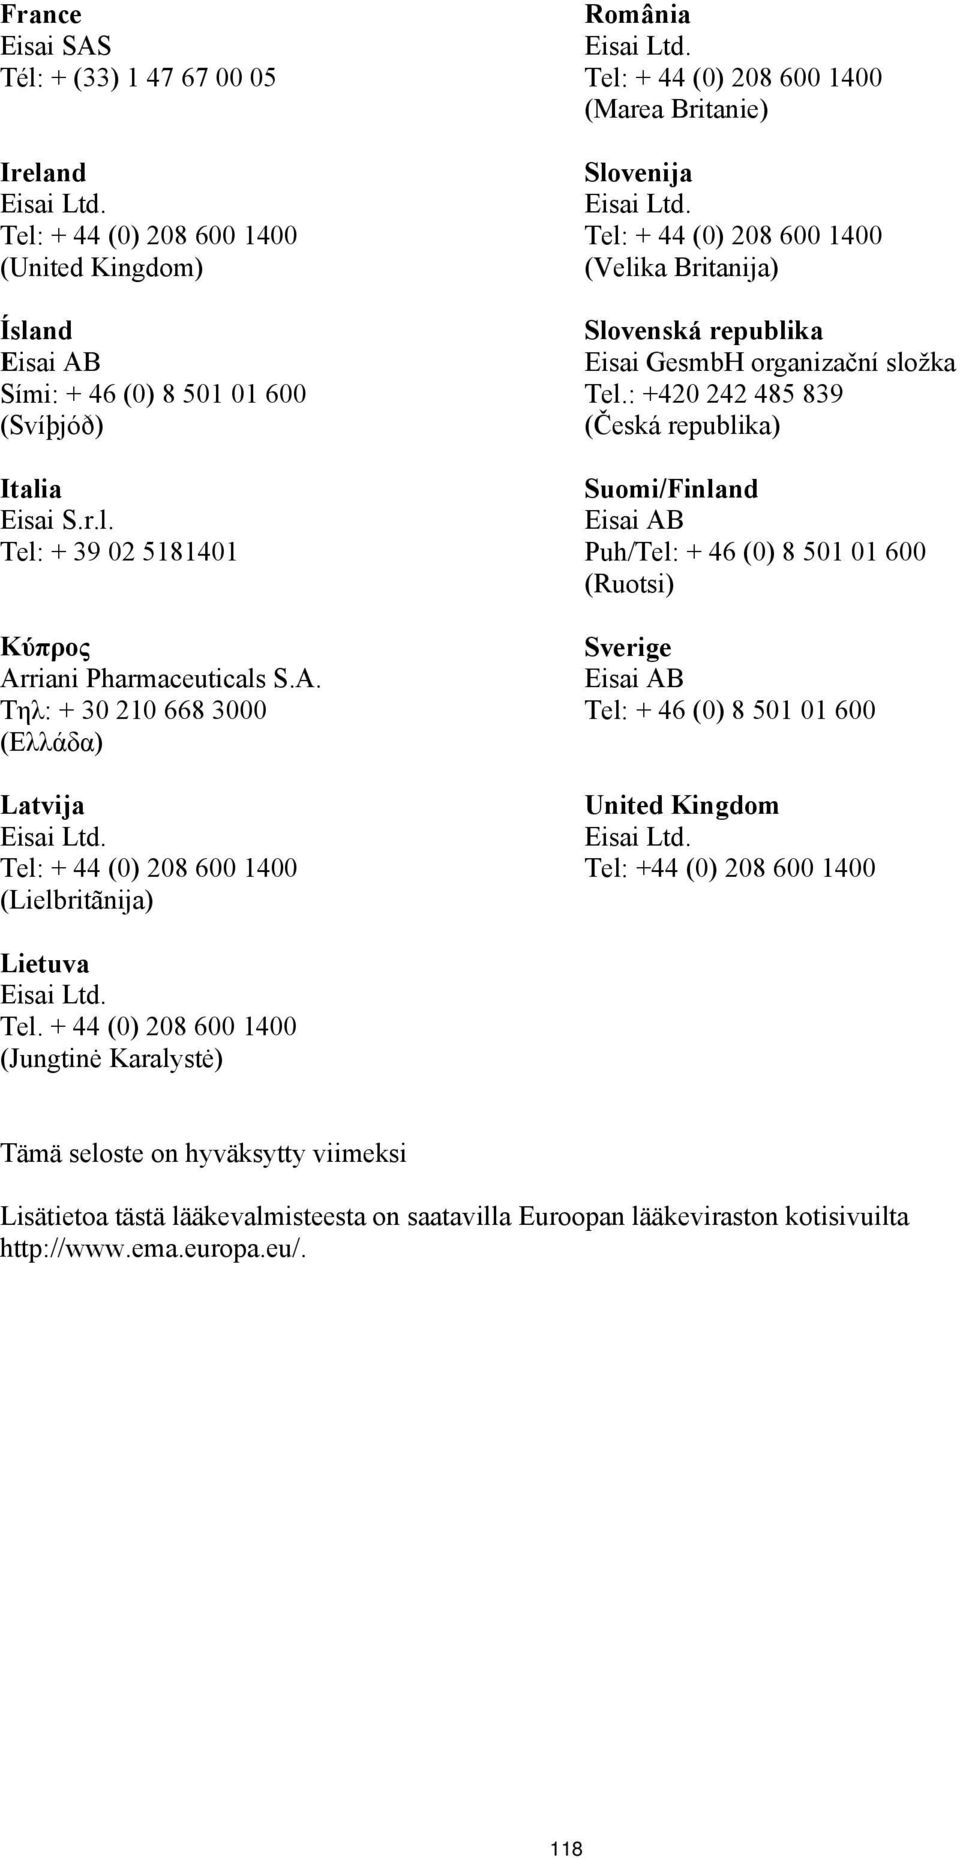 : +420 242 485 839 (Česká republika) Suomi/Finland Puh/Tel: + 46 (0) 8 501 01 600 (Ruotsi) Sverige Tel: + 46 (0) 8 501 01 600 United Kingdom Tel: +44 (0) 208 600 1400 Lietuva Tel.